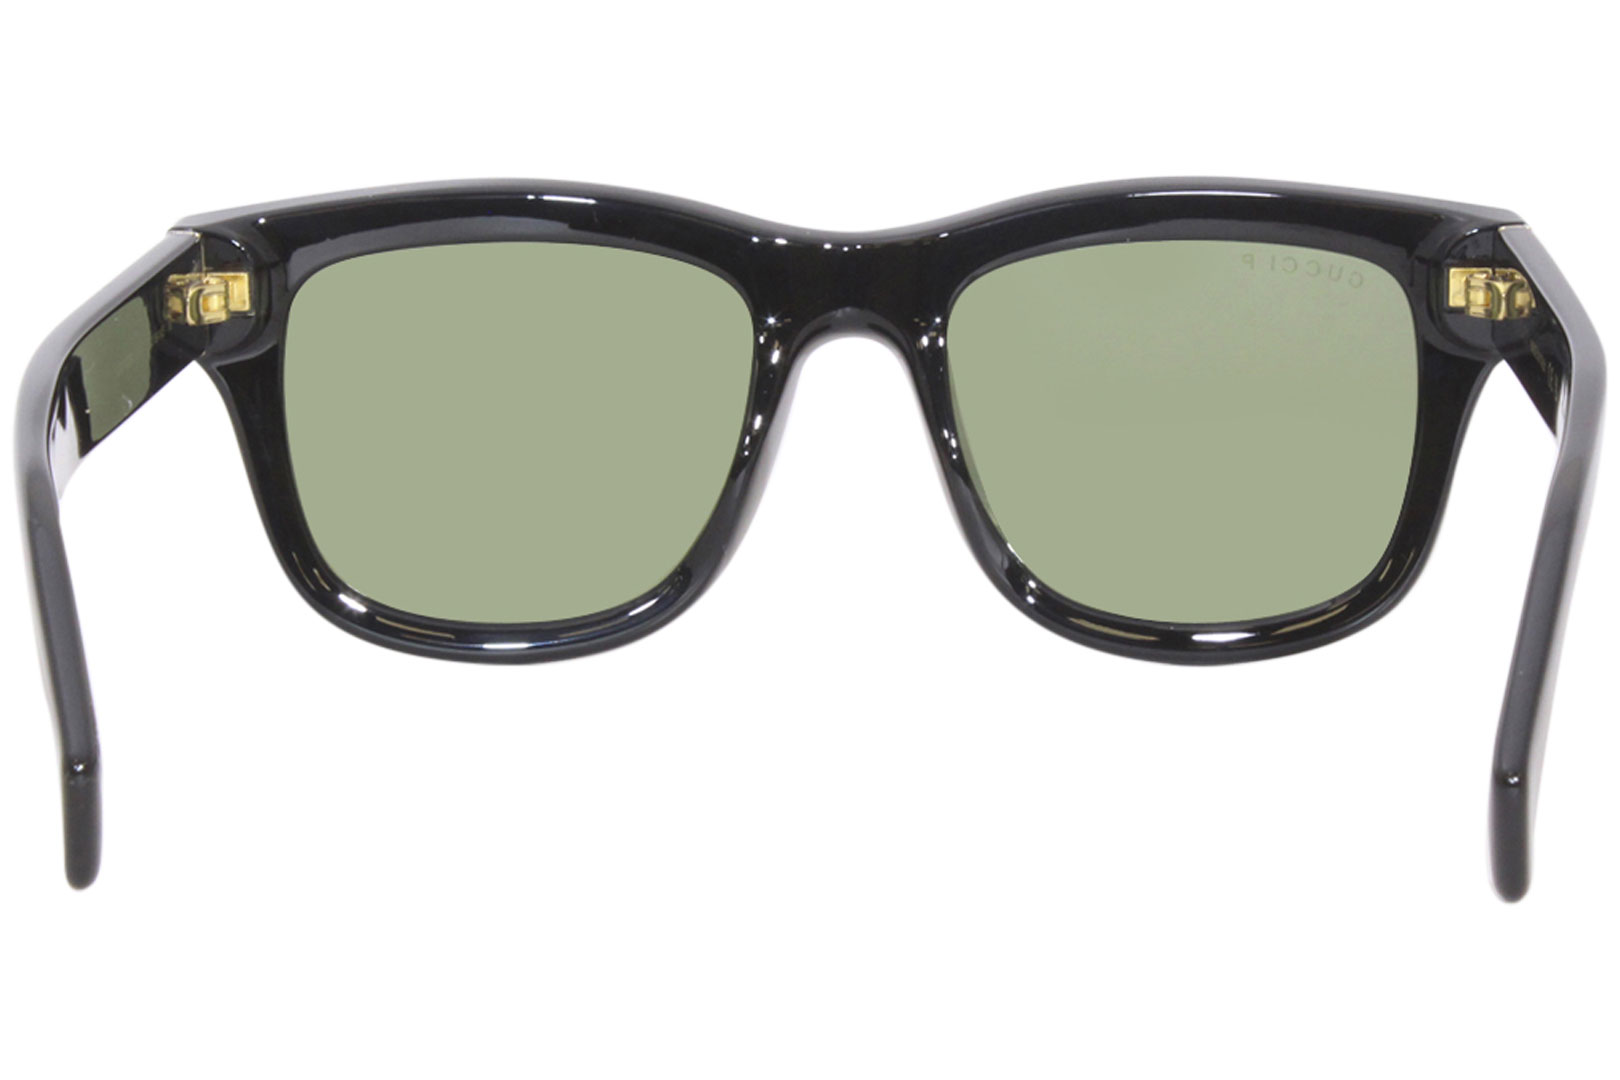 Gucci GG1135S 001 Sunglasses Men's Black/Polarized Green Square Shape ...